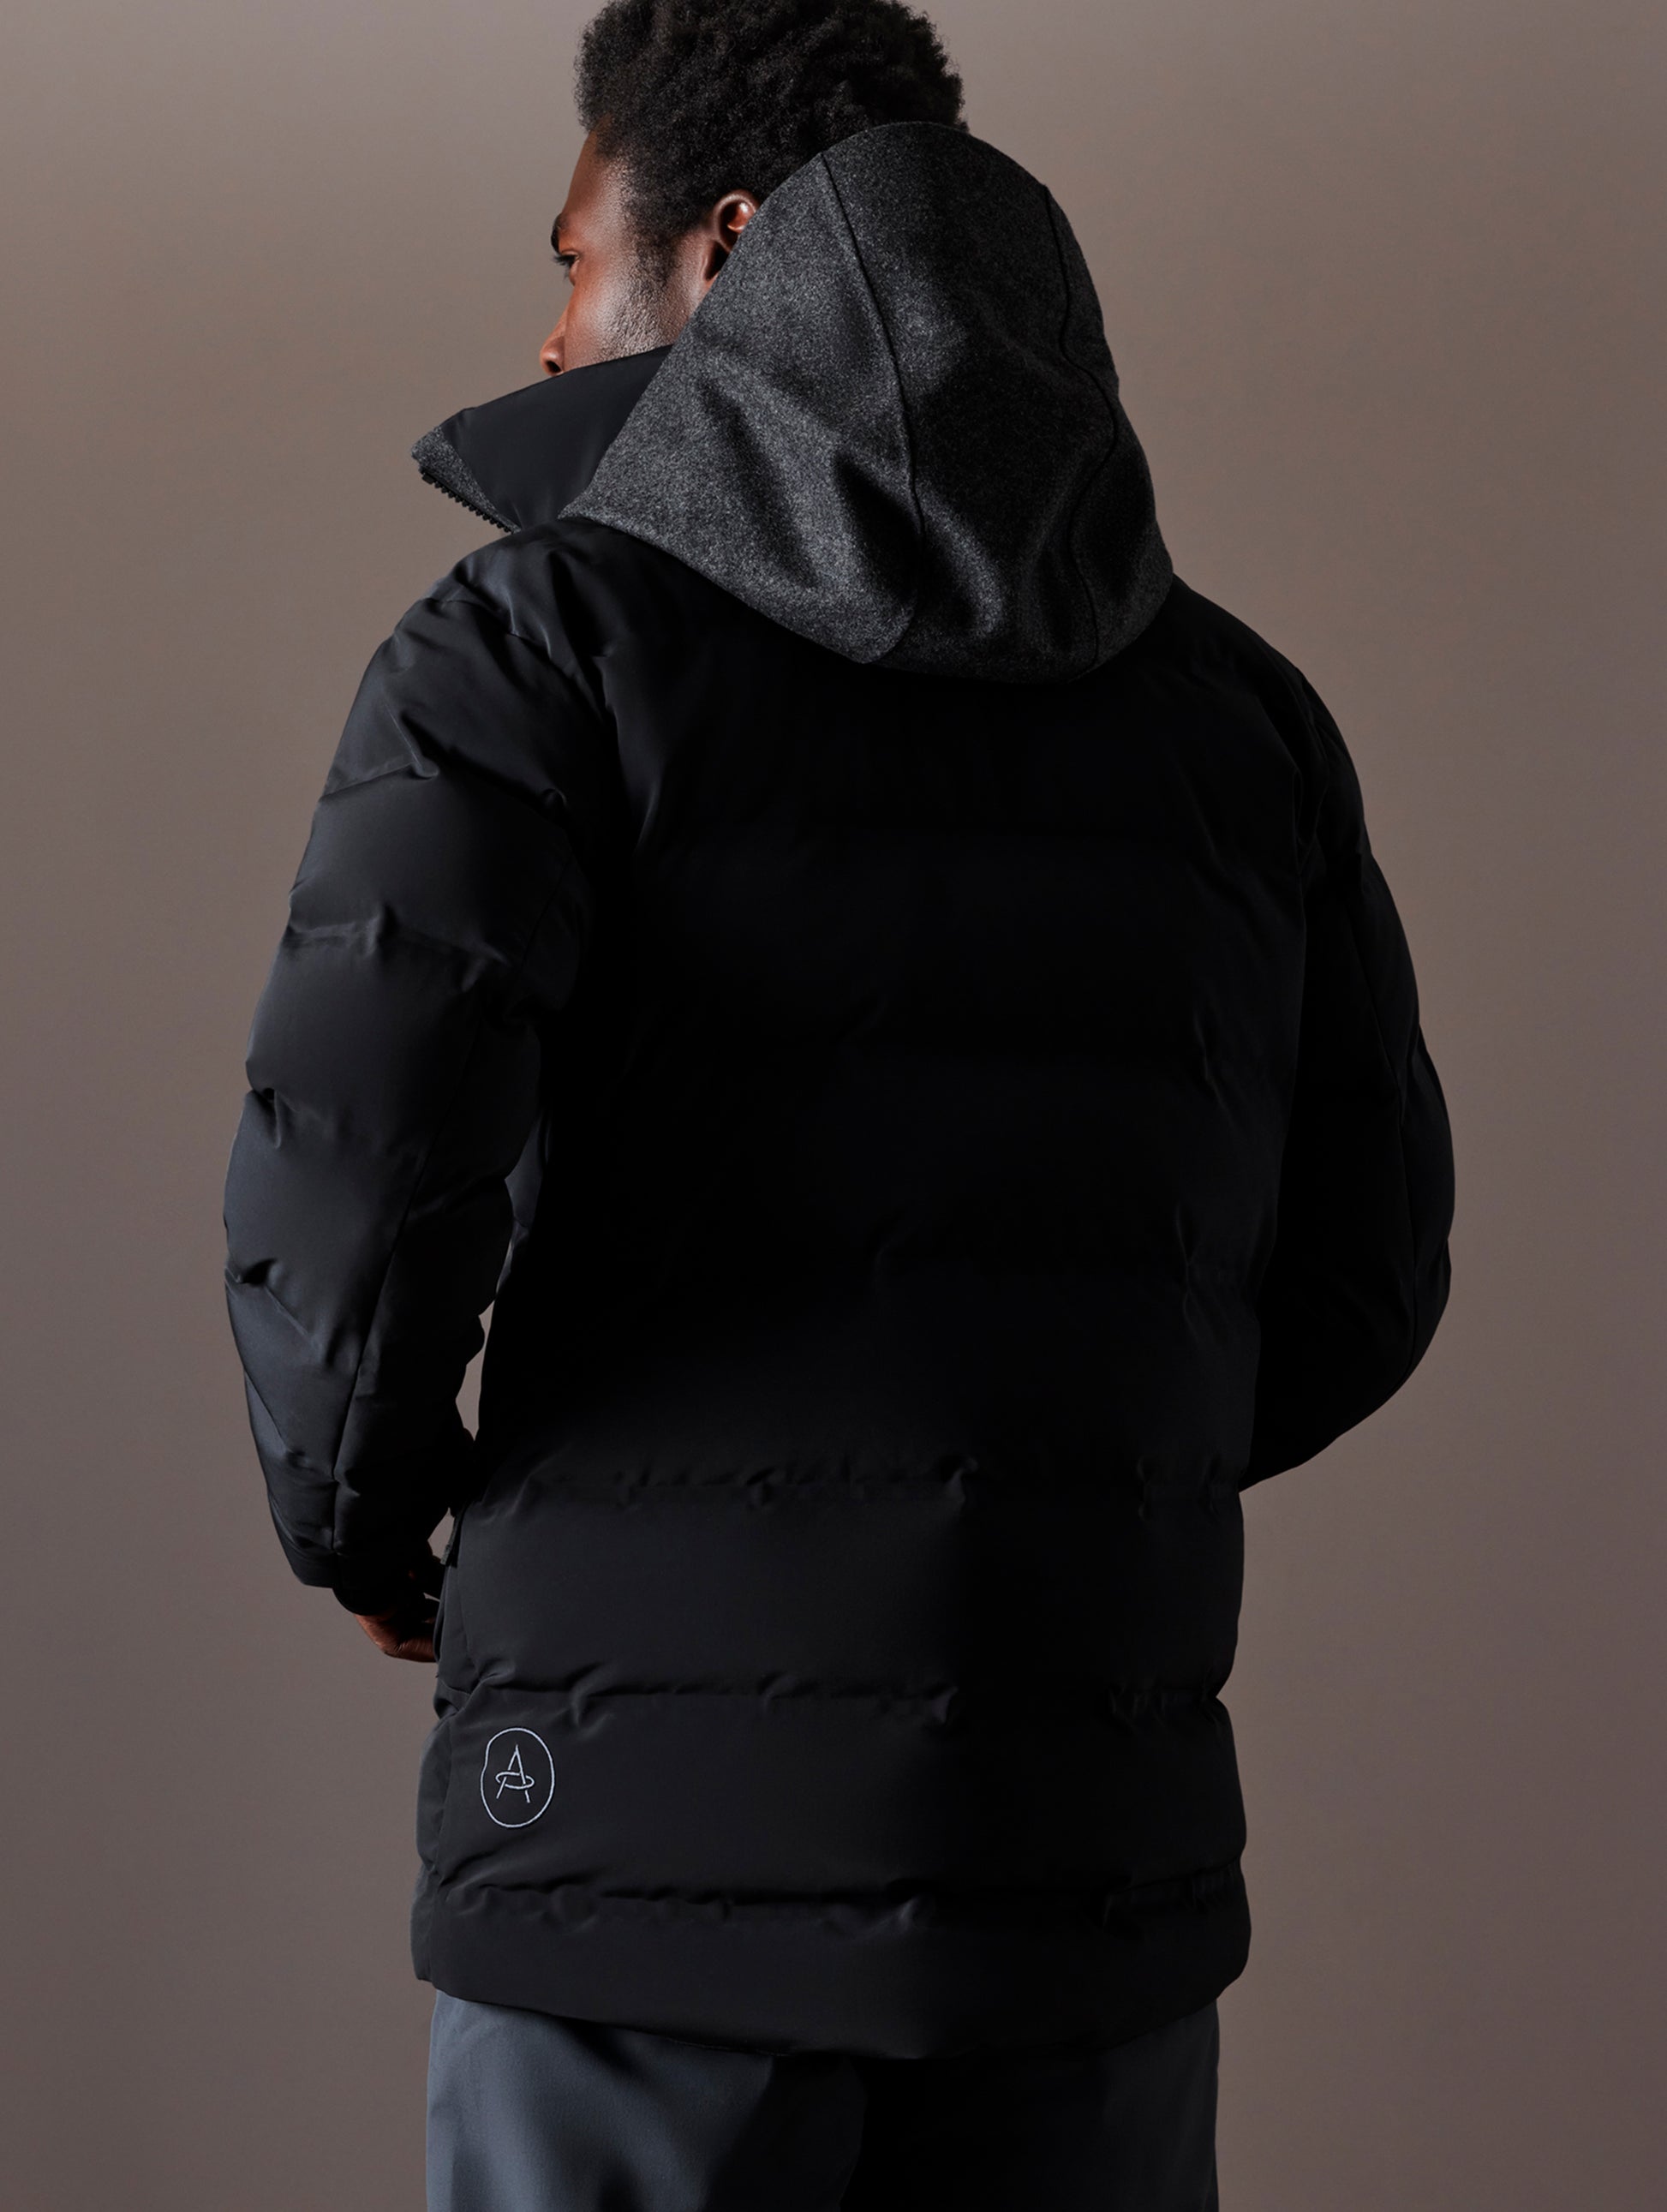 Man wearing black ski jacket